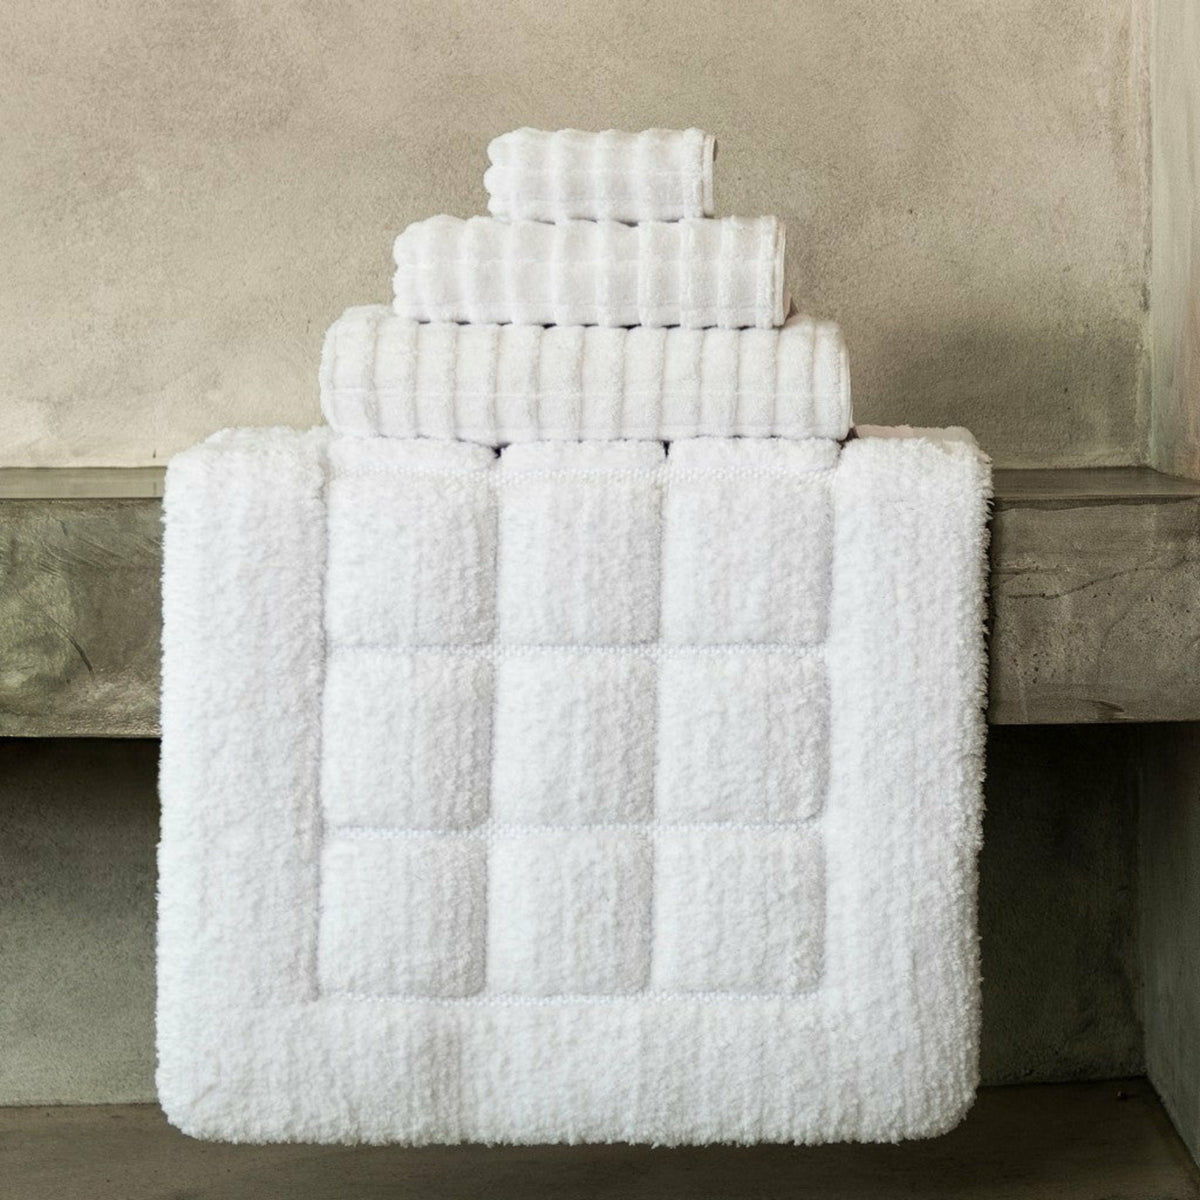 Graccioza Heaven Bath Towels and Rugs Main White Fine Linens